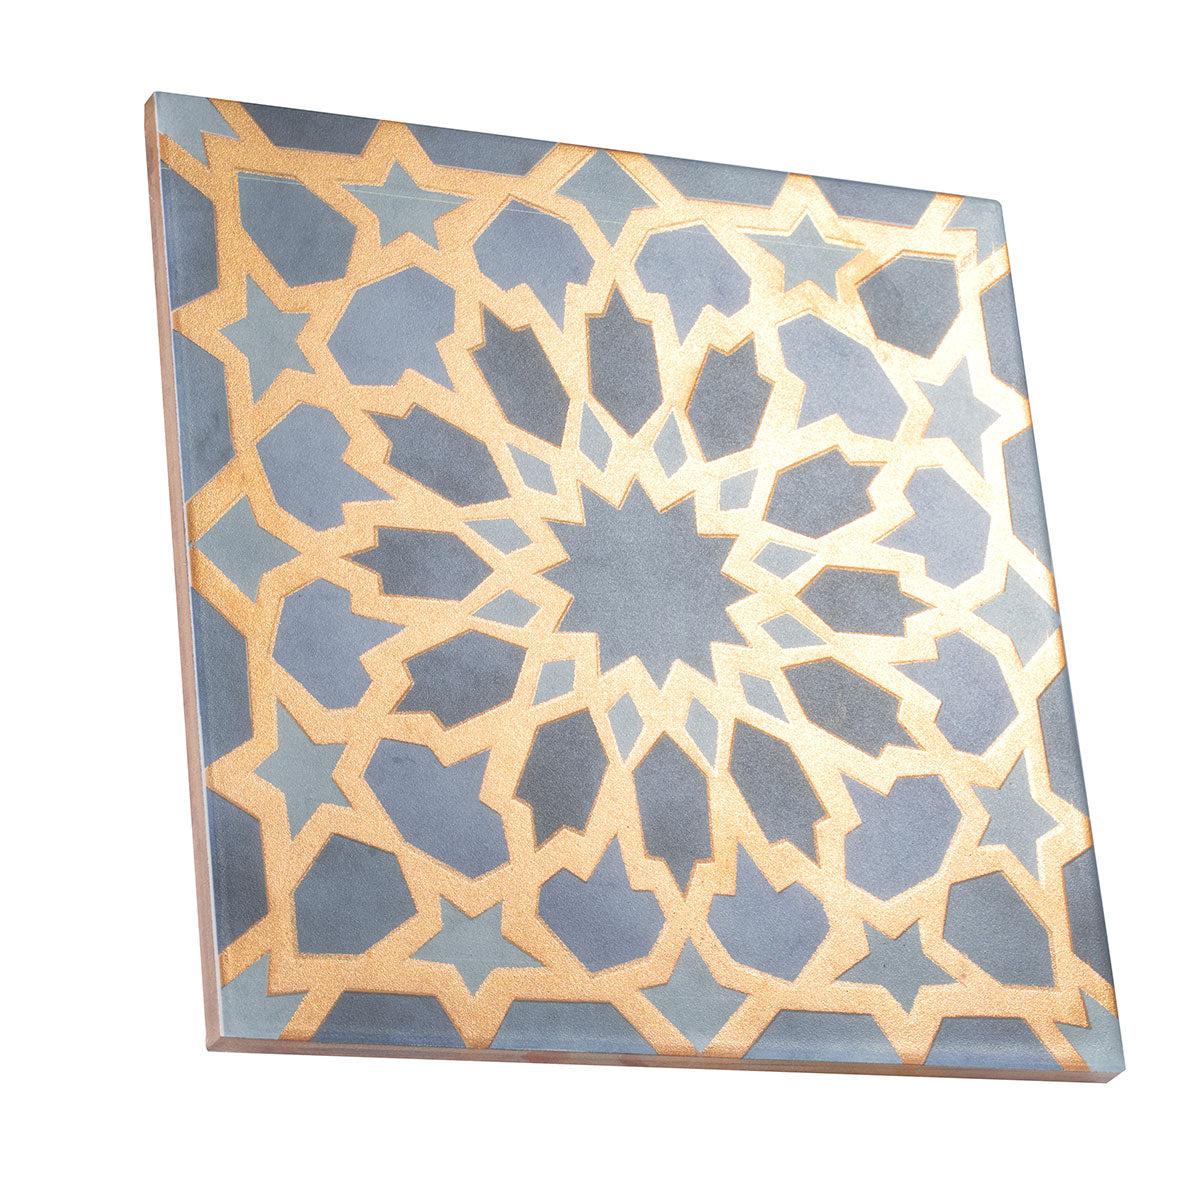 Amira Regal Samarkand Blue and Gold Patterned Porcelain Tile